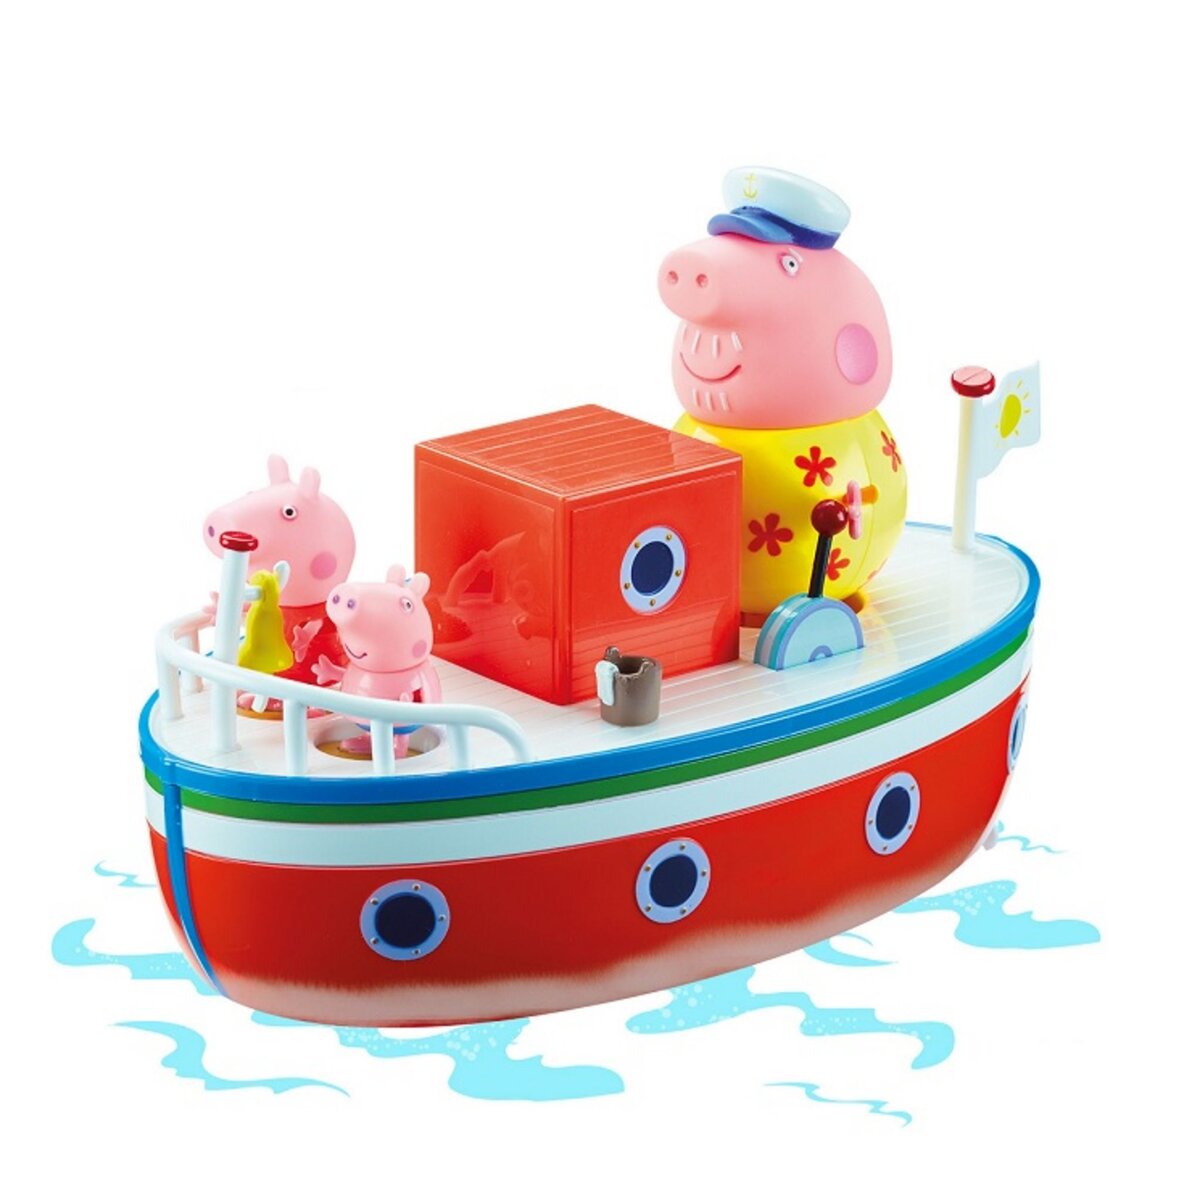 PEPPA PIG Le bateau de papy Pig